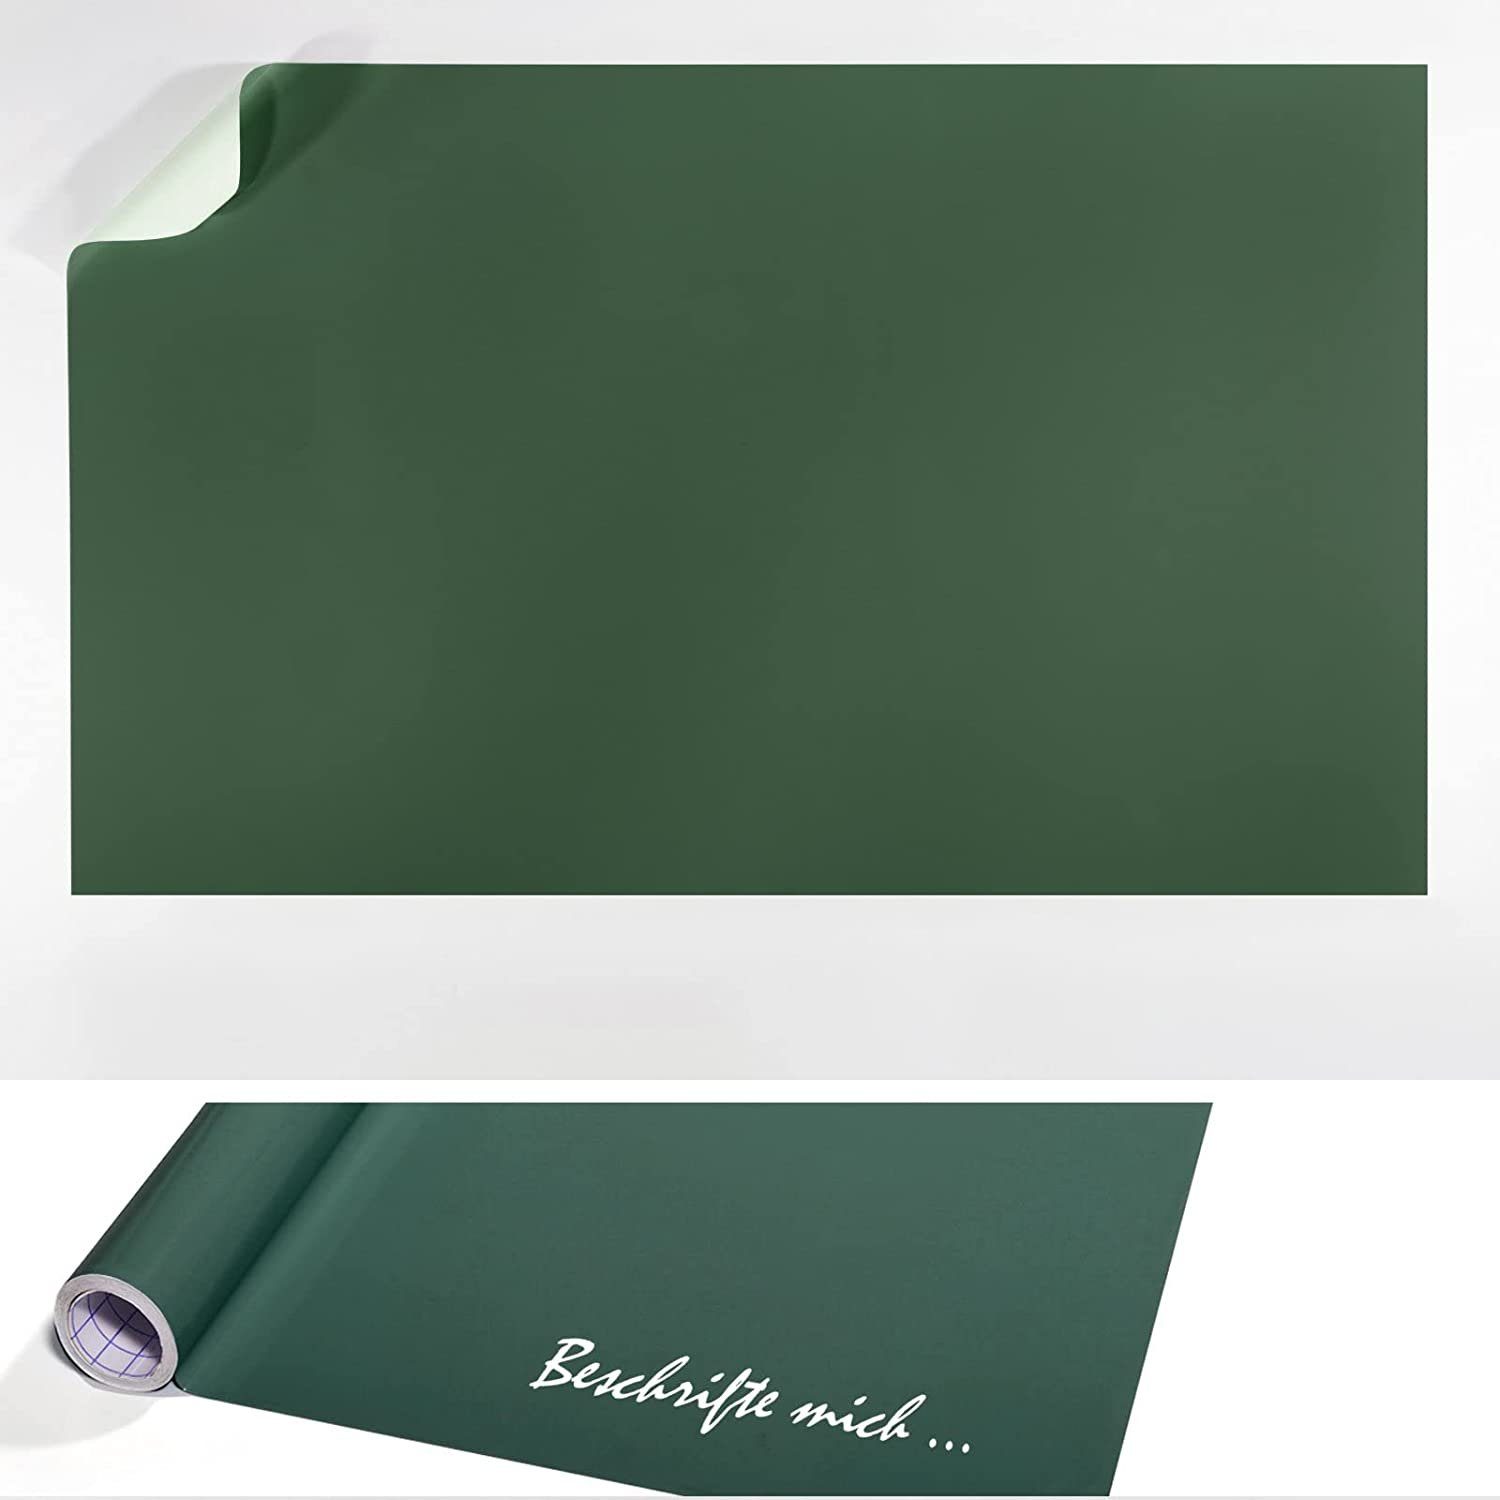 Karat Tafelfolie selbstklebend selbstklebend, Grün